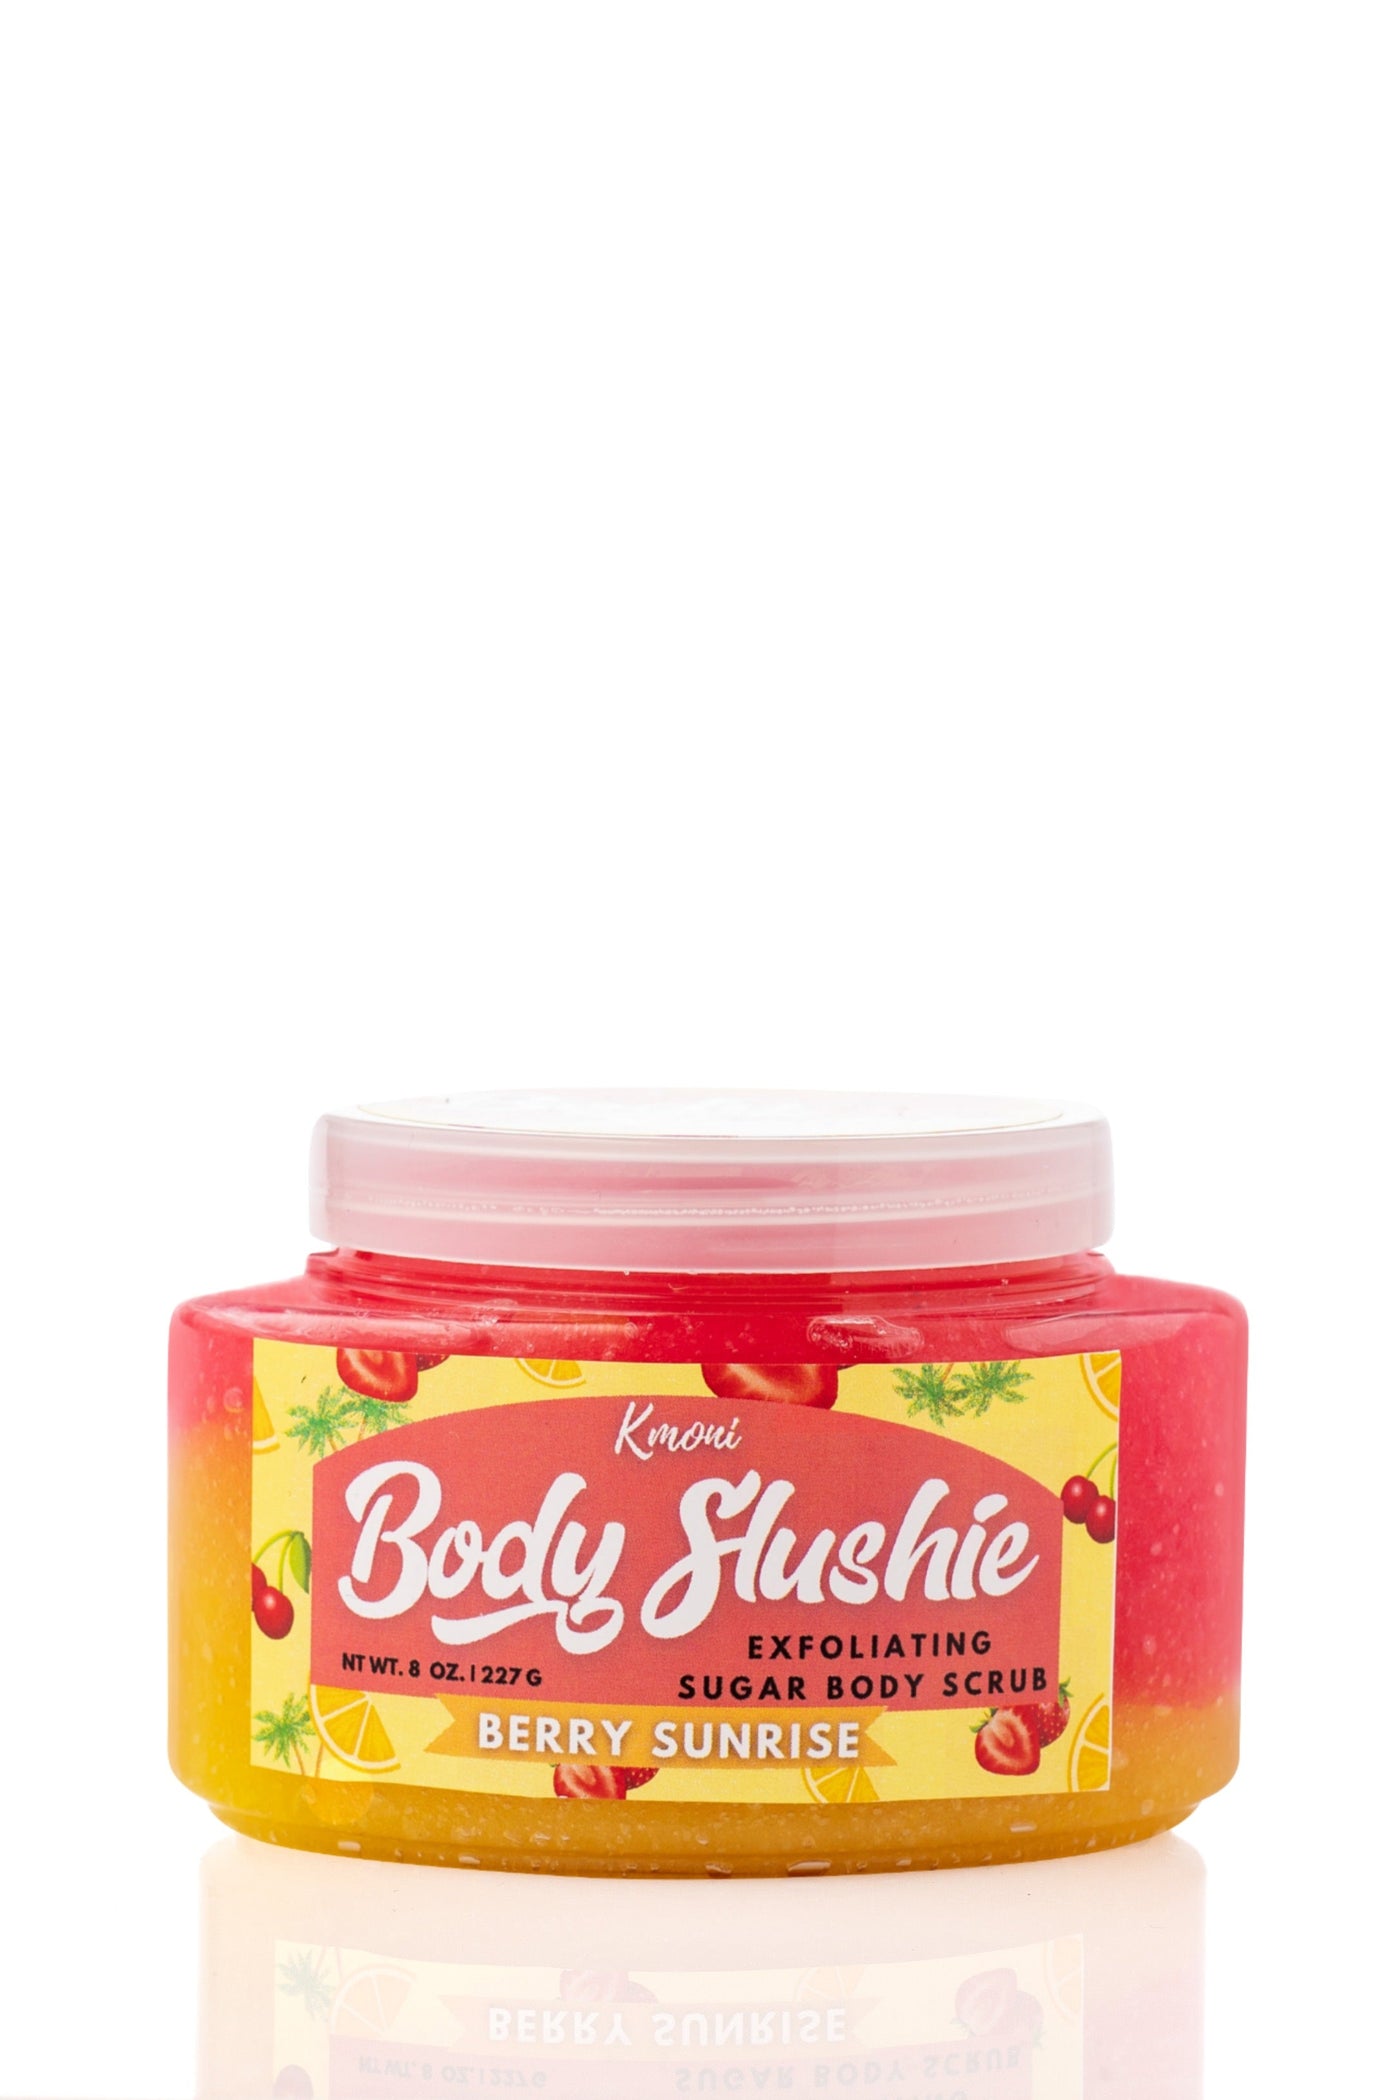 Berry Sunrise Body Slushie